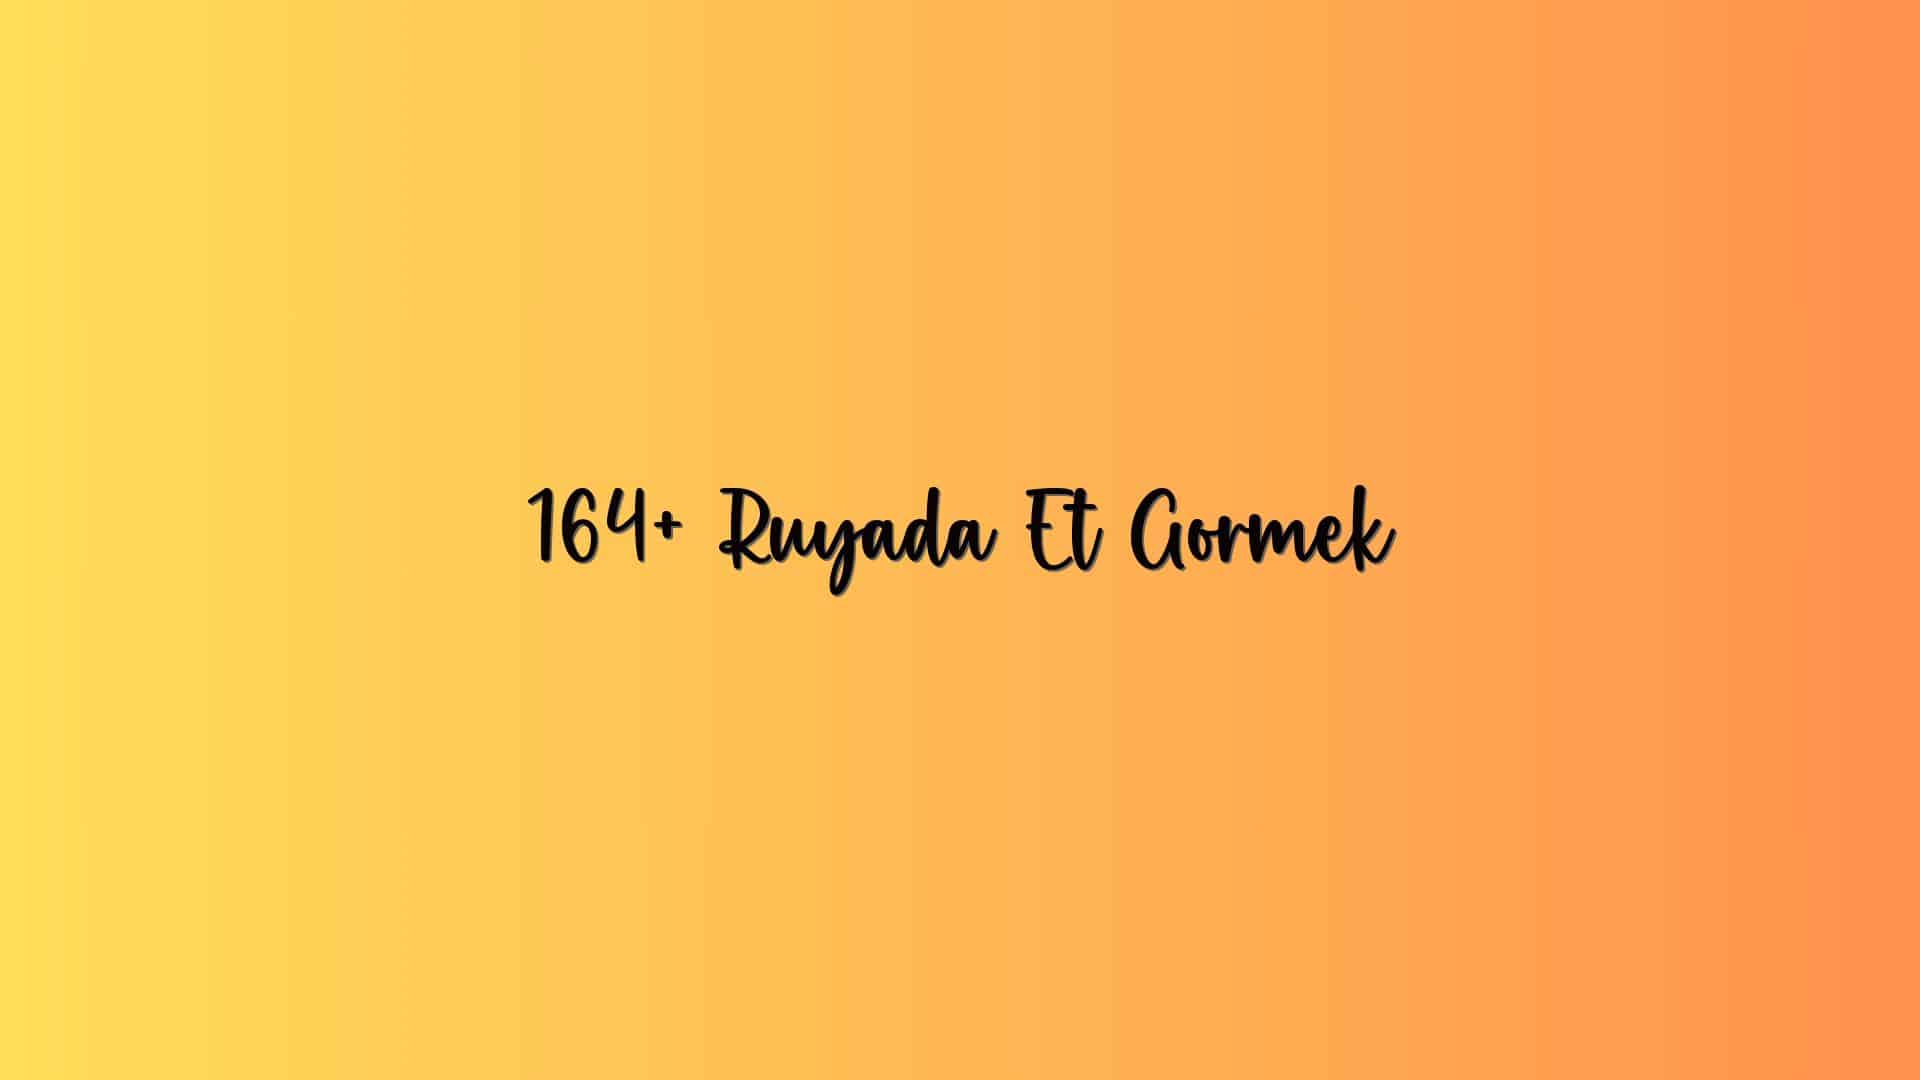 164+ Ruyada Et Gormek